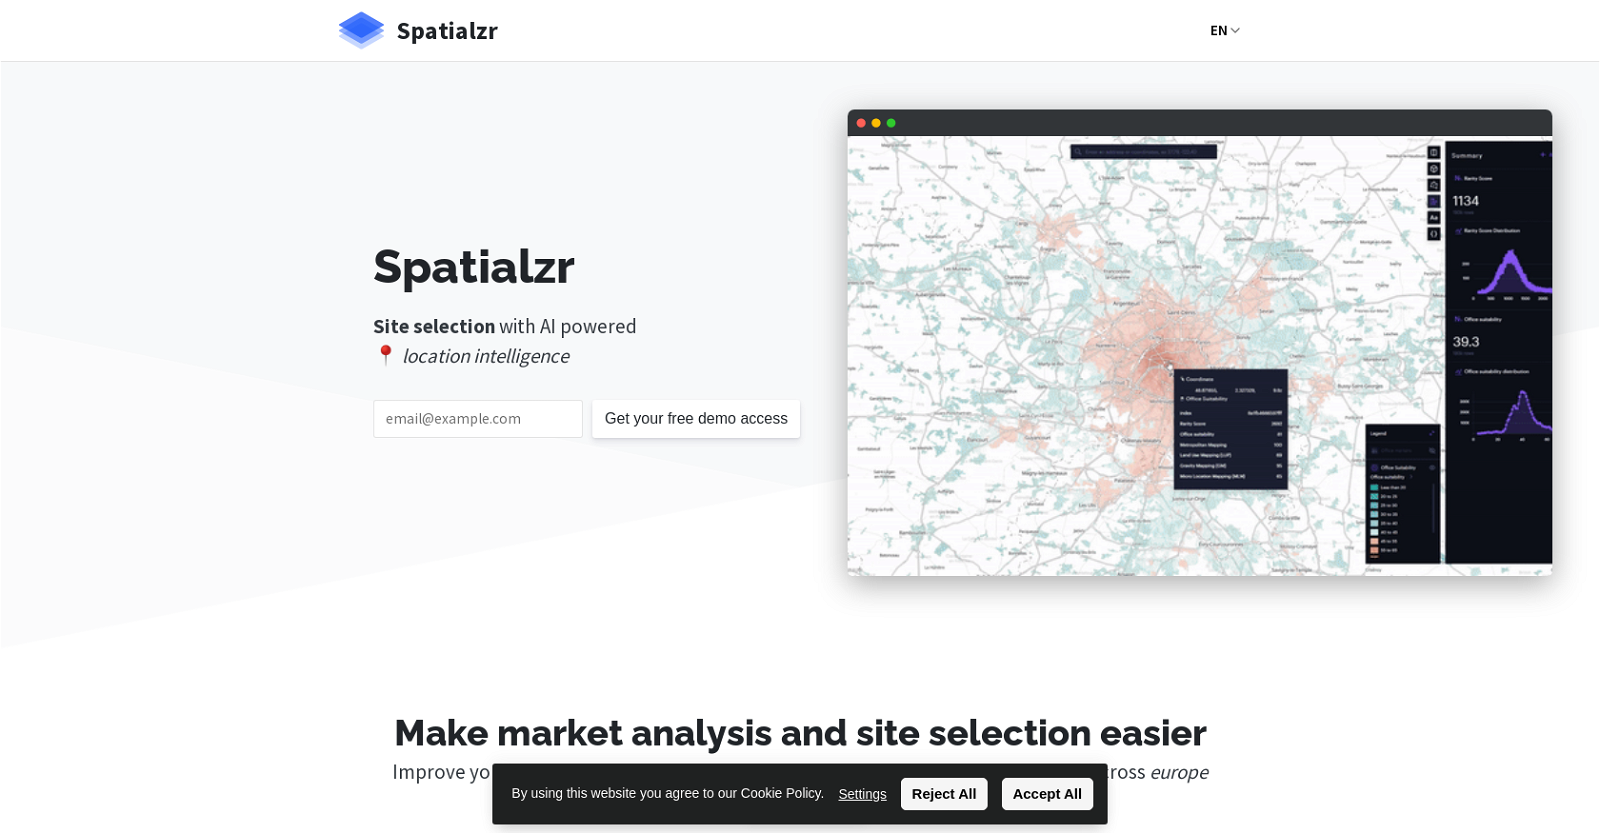 Spatialzr website